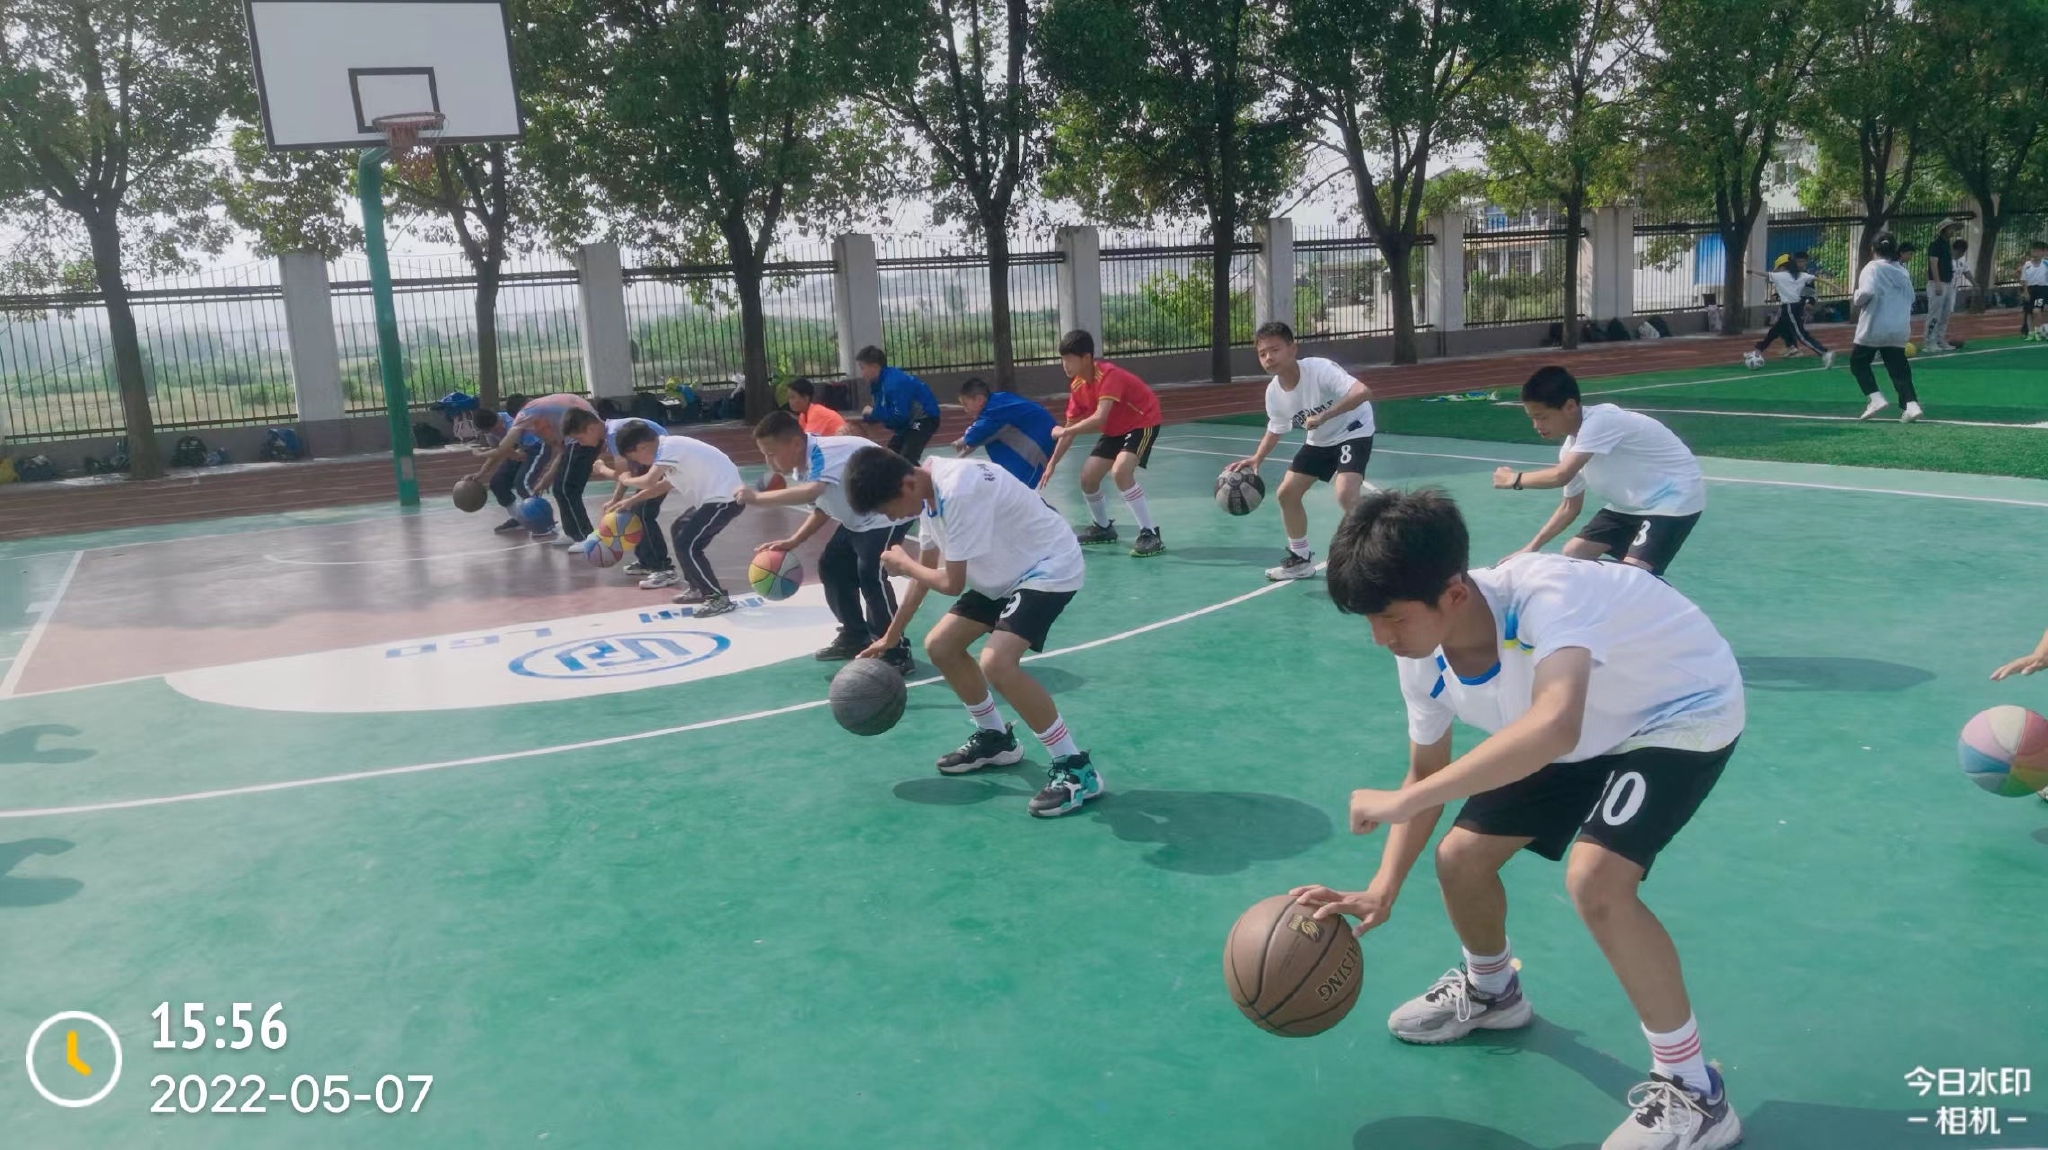 孩子们在新修建的篮球场活动。